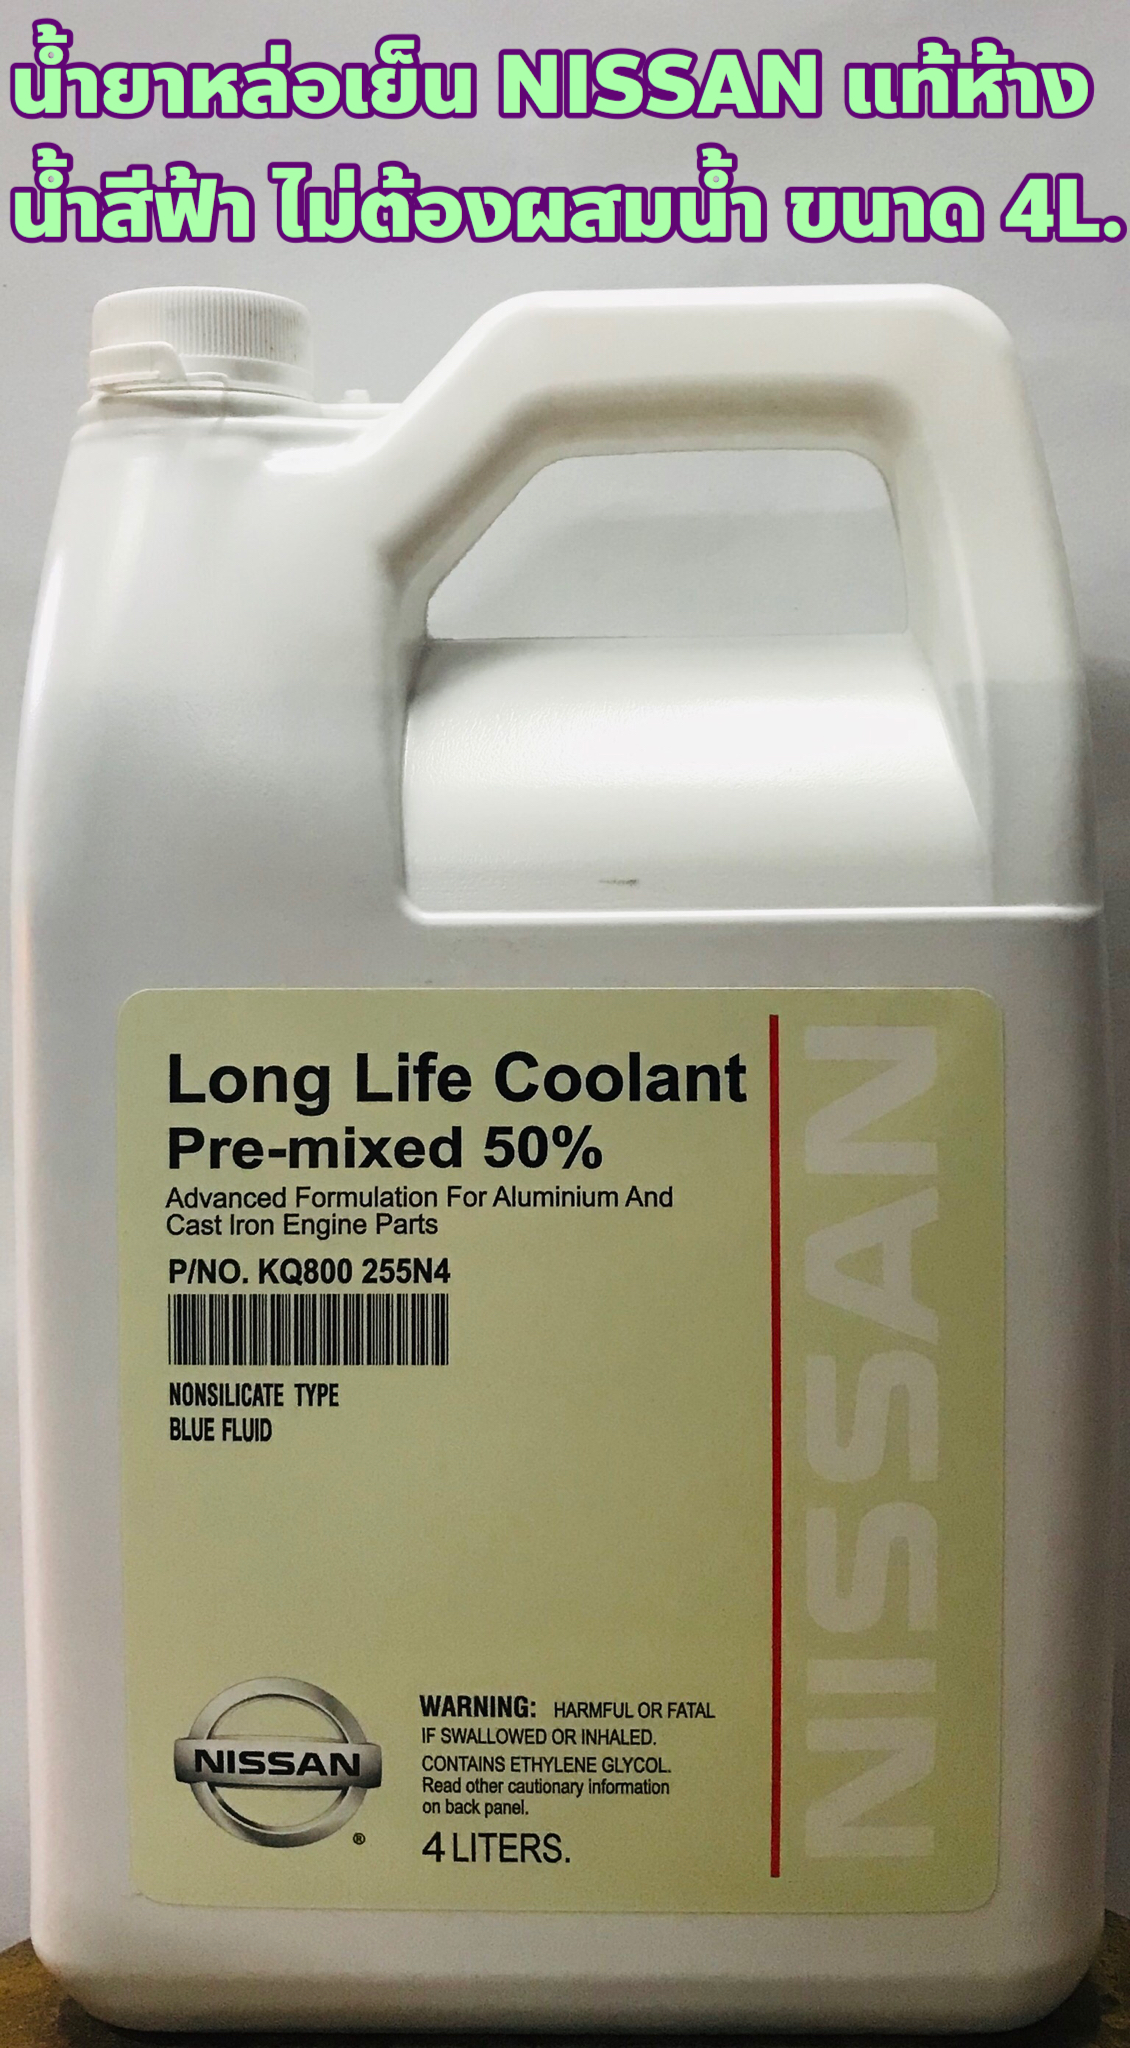 น้ำยาหม้อน้ำ น้ำยาหล่อเย็น Nissan แท้เบิกศูนย์ ขนาด 4ลิตร ชนิดไม่ต้องผสมน้ำ